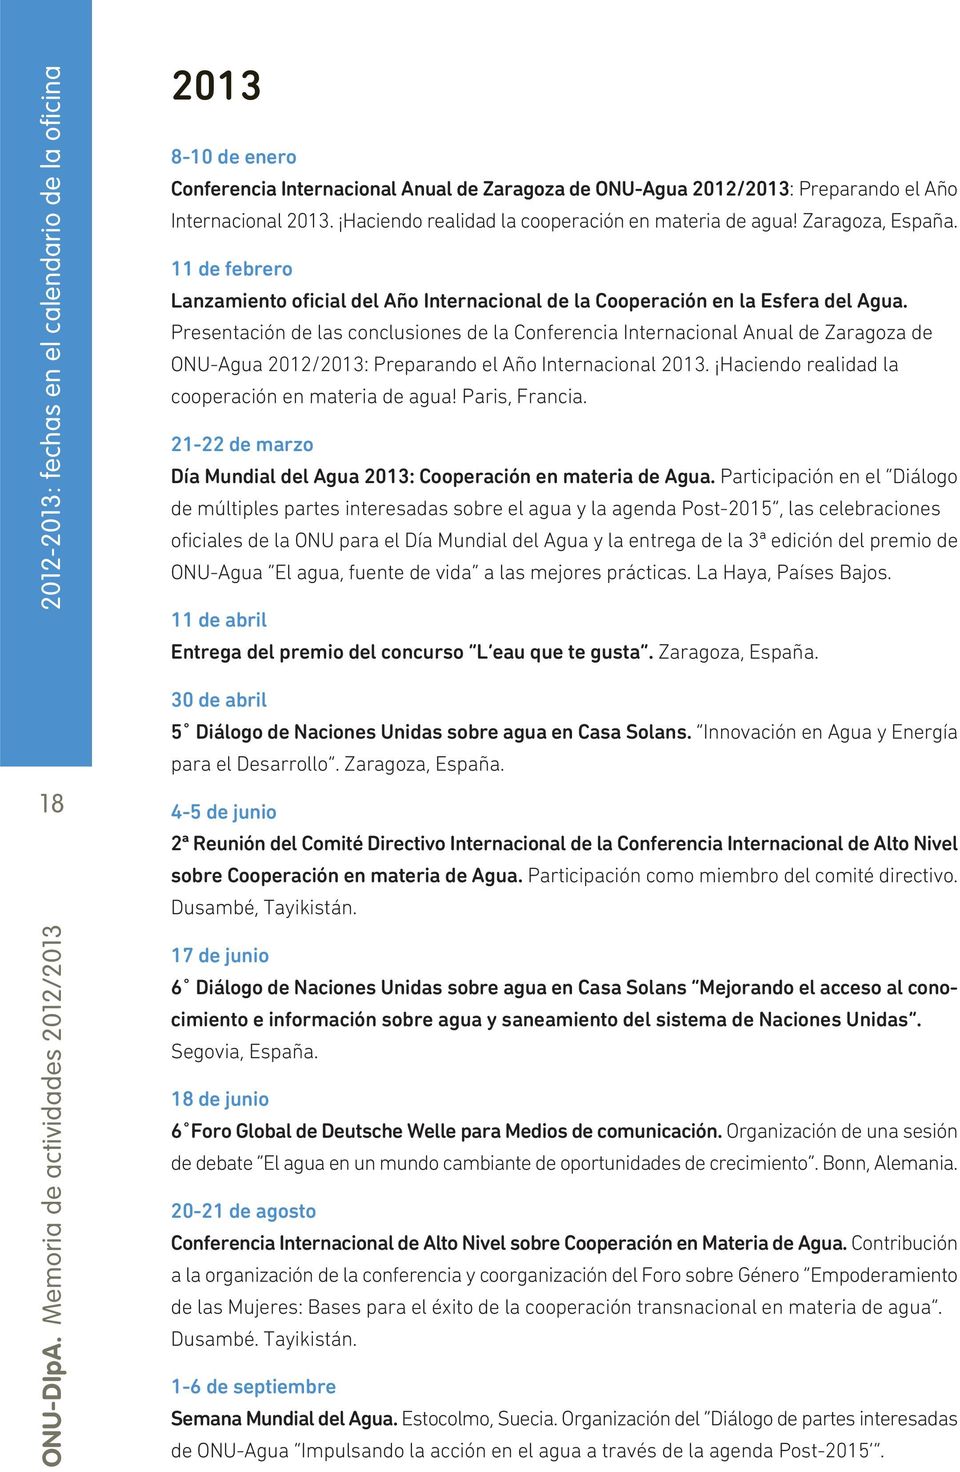 Presentación de las conclusiones de la Conferencia Internacional Anual de Zaragoza de ONU-Agua 2012/2013: Preparando el Año Internacional 2013. Haciendo realidad la cooperación en materia de agua!